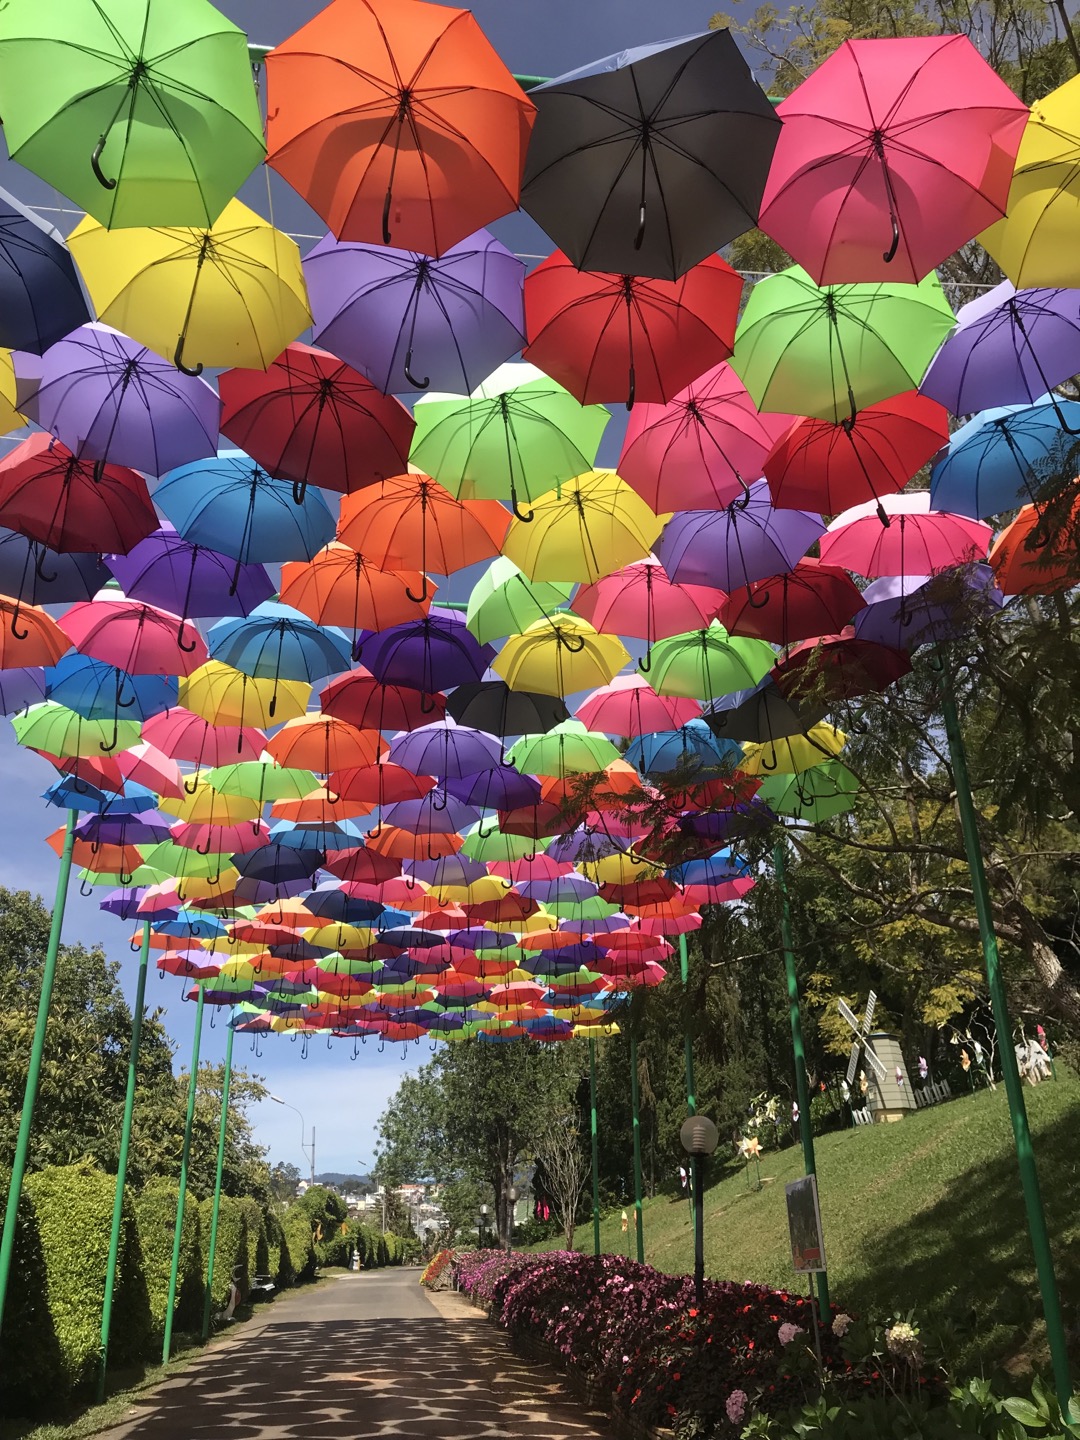 꽃 정원 내 우산 조형물 사진